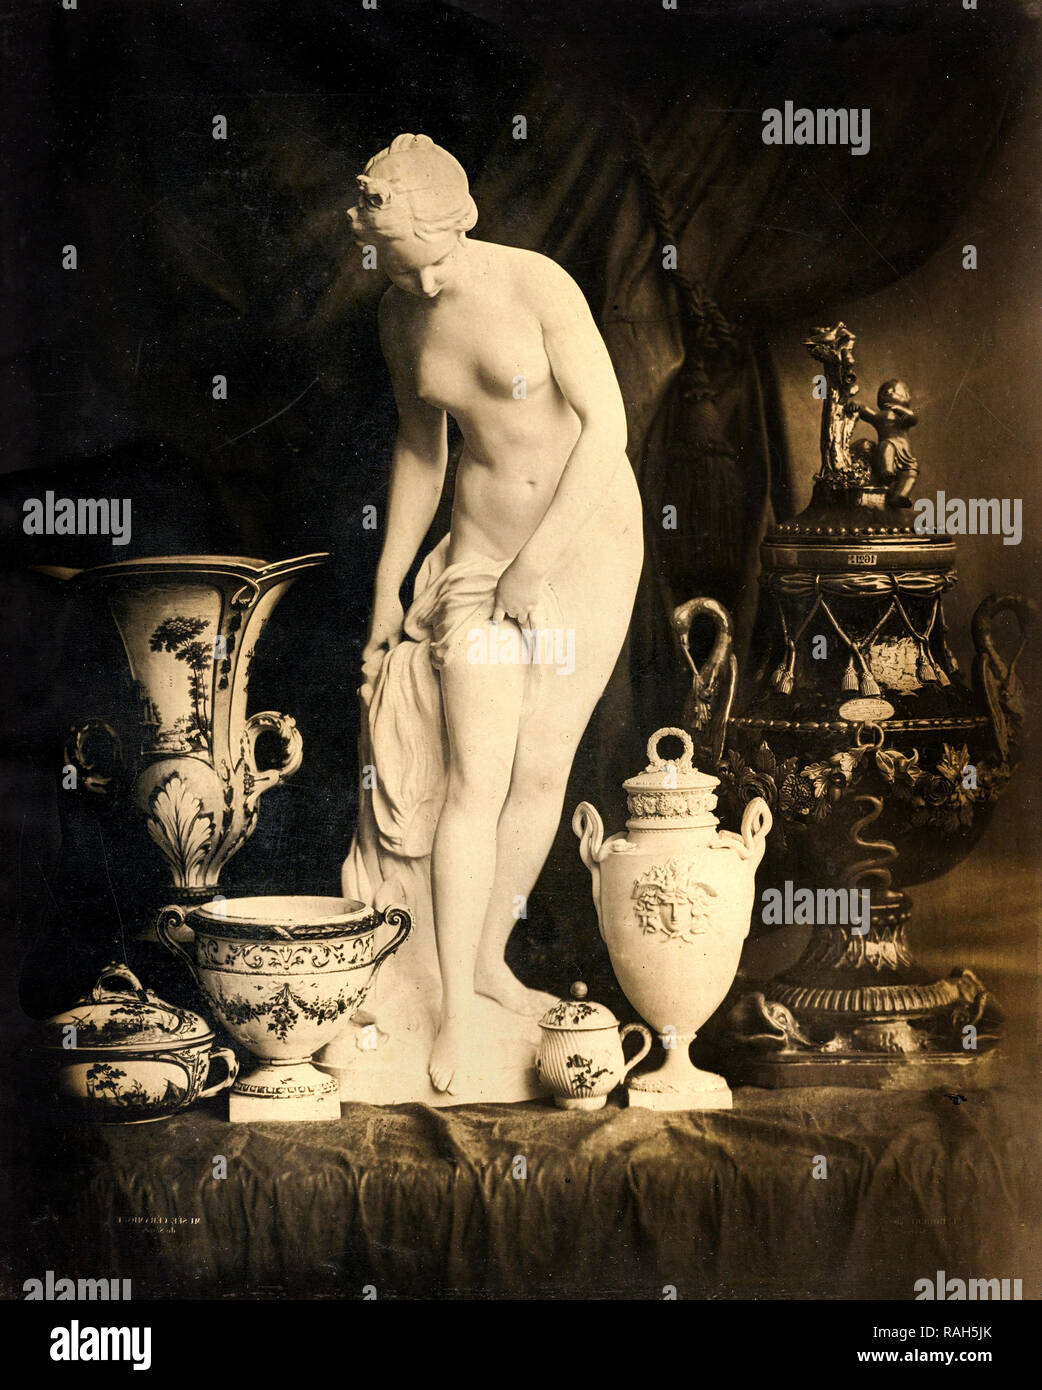 Robert Louis-Remy, Bodegón con estatuilla y jarrones de carbono 1855, imprimir el J. Paul Getty Museum, Los Angeles, Estados Unidos. Foto de stock